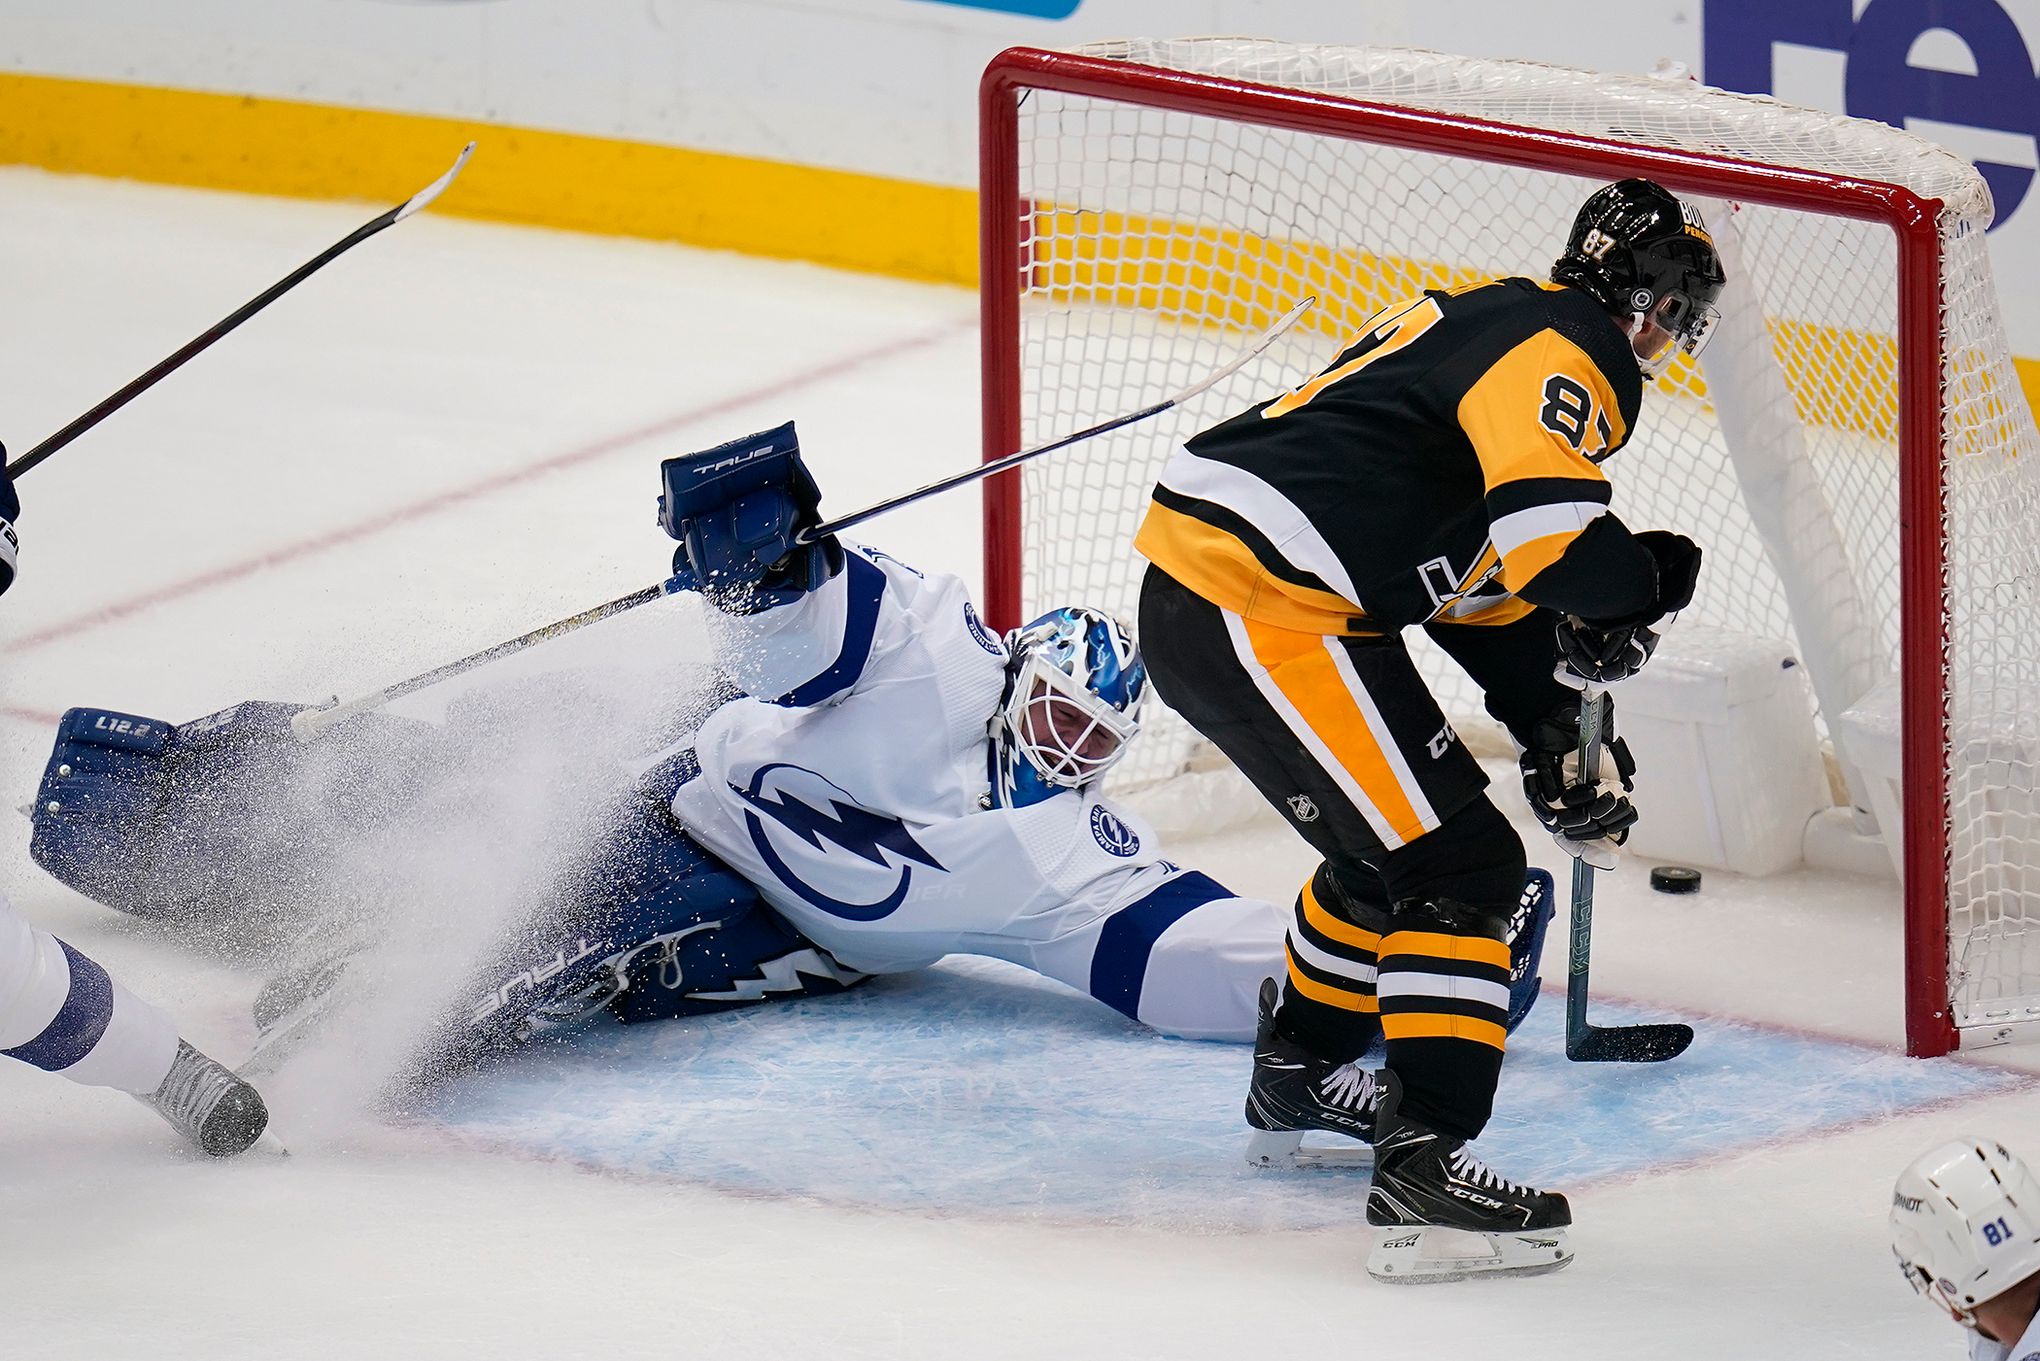 Crosby's status clouds Rangers-Penguins as Game 6 looms